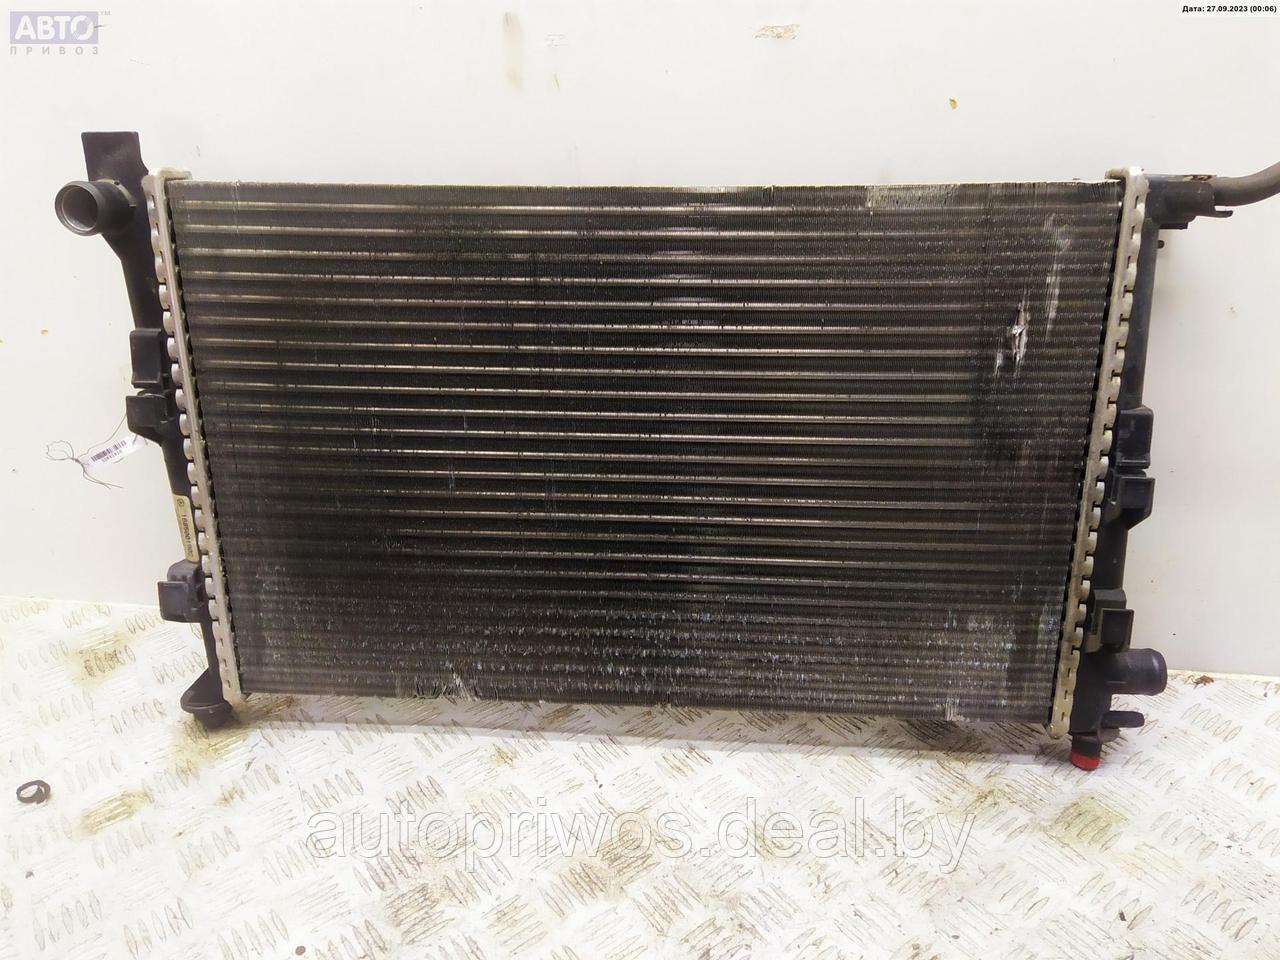 Кассета радиаторов Mercedes W168 (A)